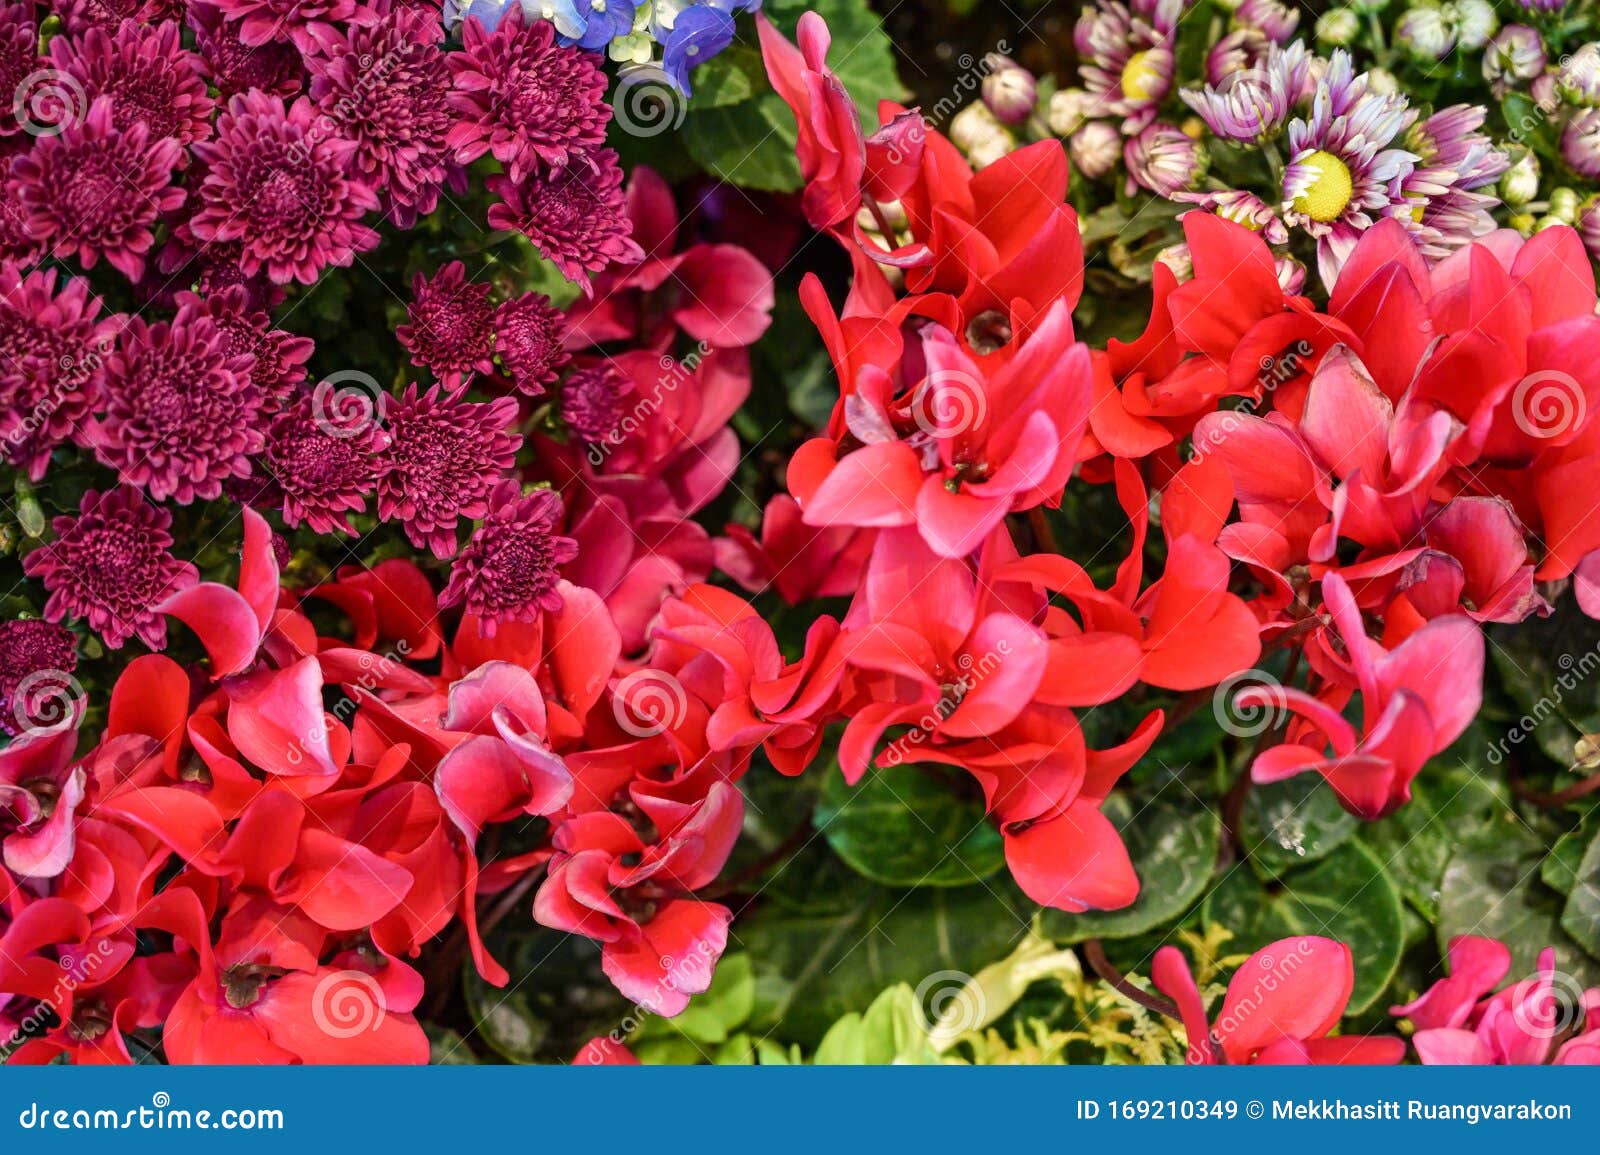 Una Combinación De Flores Moradas Y Rojas Que Se Ven Hermosas Y Juntas  Imagen de archivo - Imagen de plano, crisol: 169210349